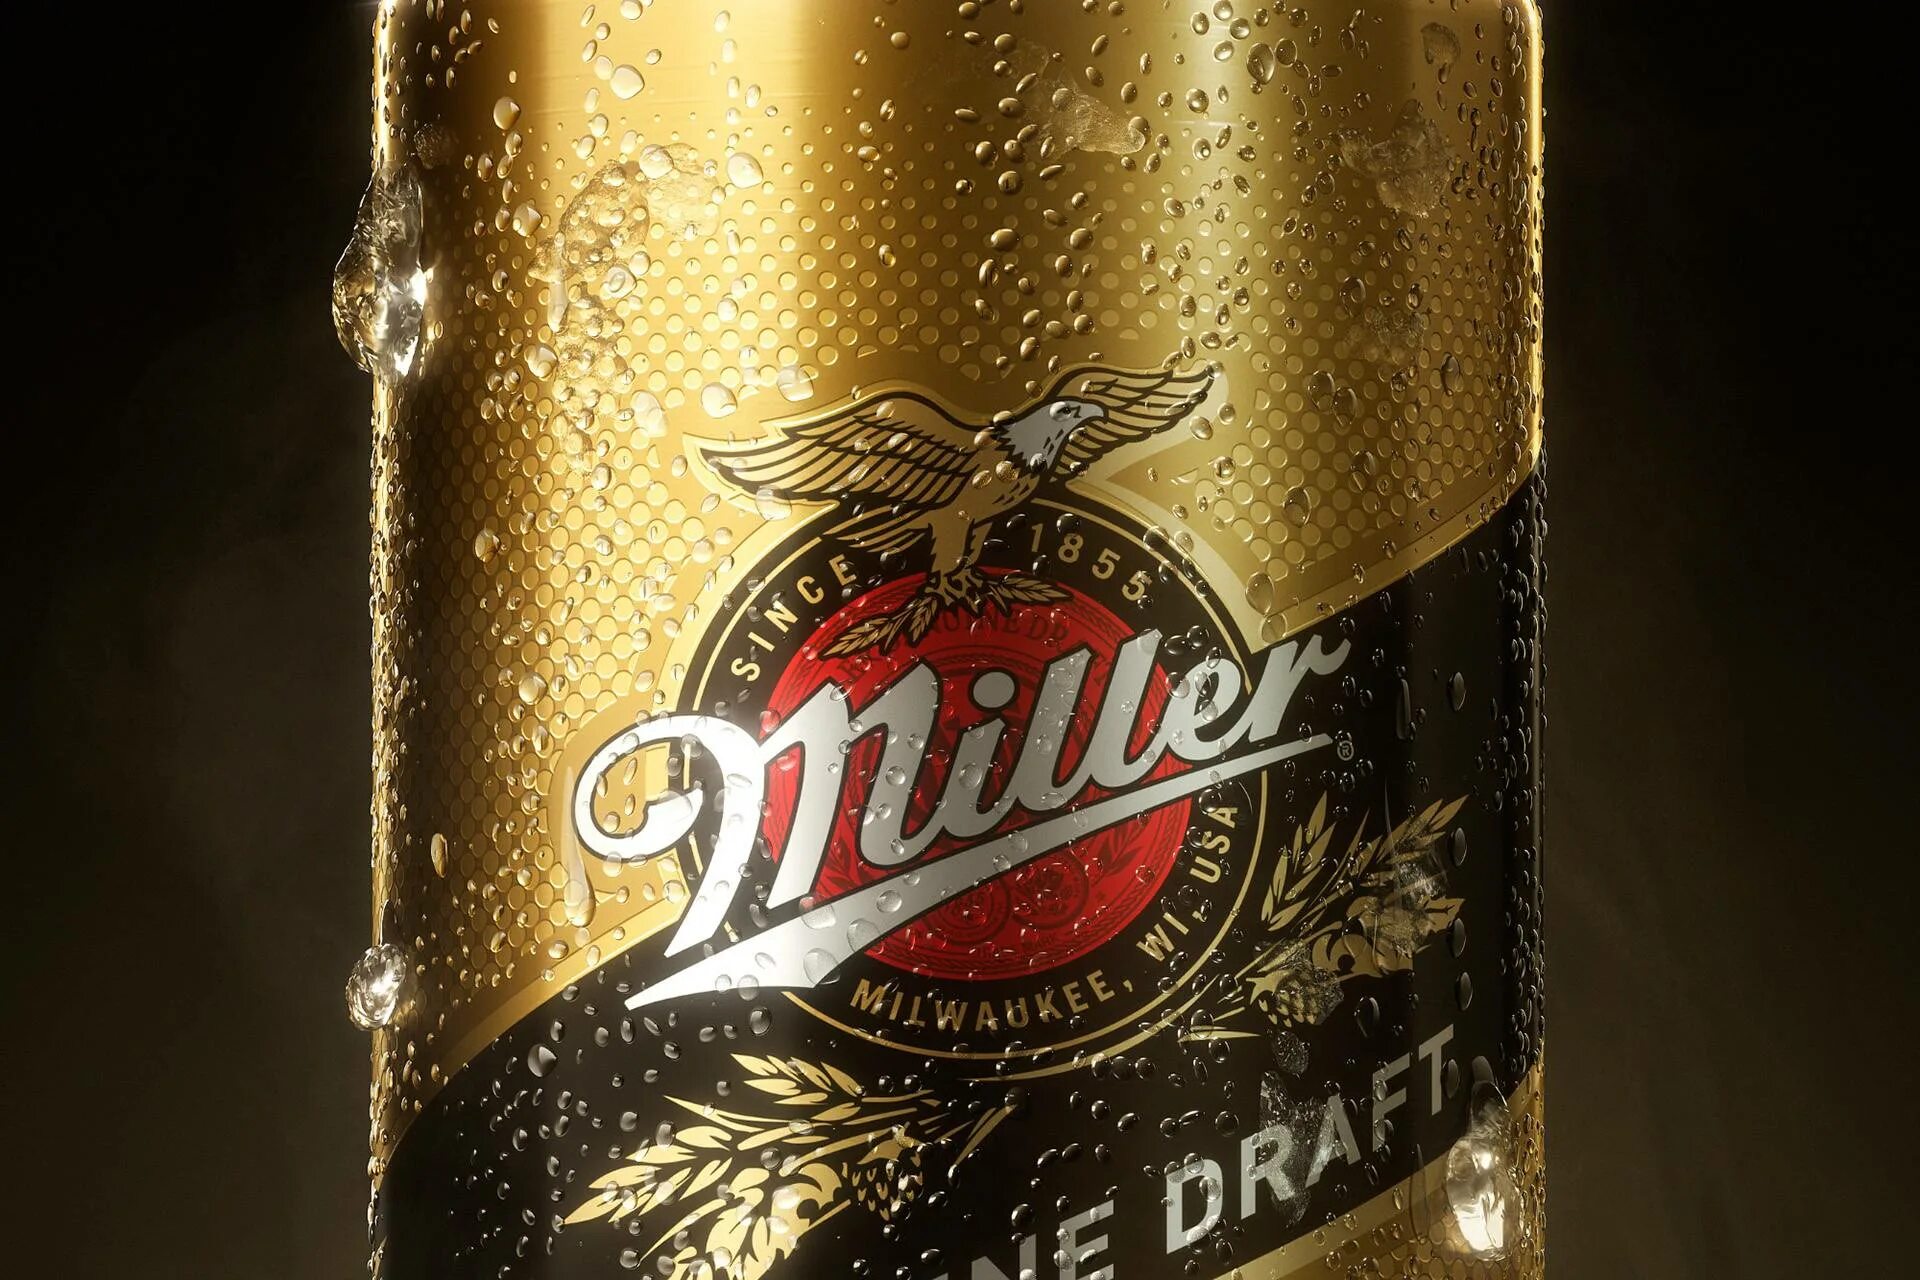 Миллер miller. Пиво Миллер Дженьюин ДРАФТ. Пиво Миллер Миллер. Пиво Миллер 0.5. Миллер Балтика пиво.